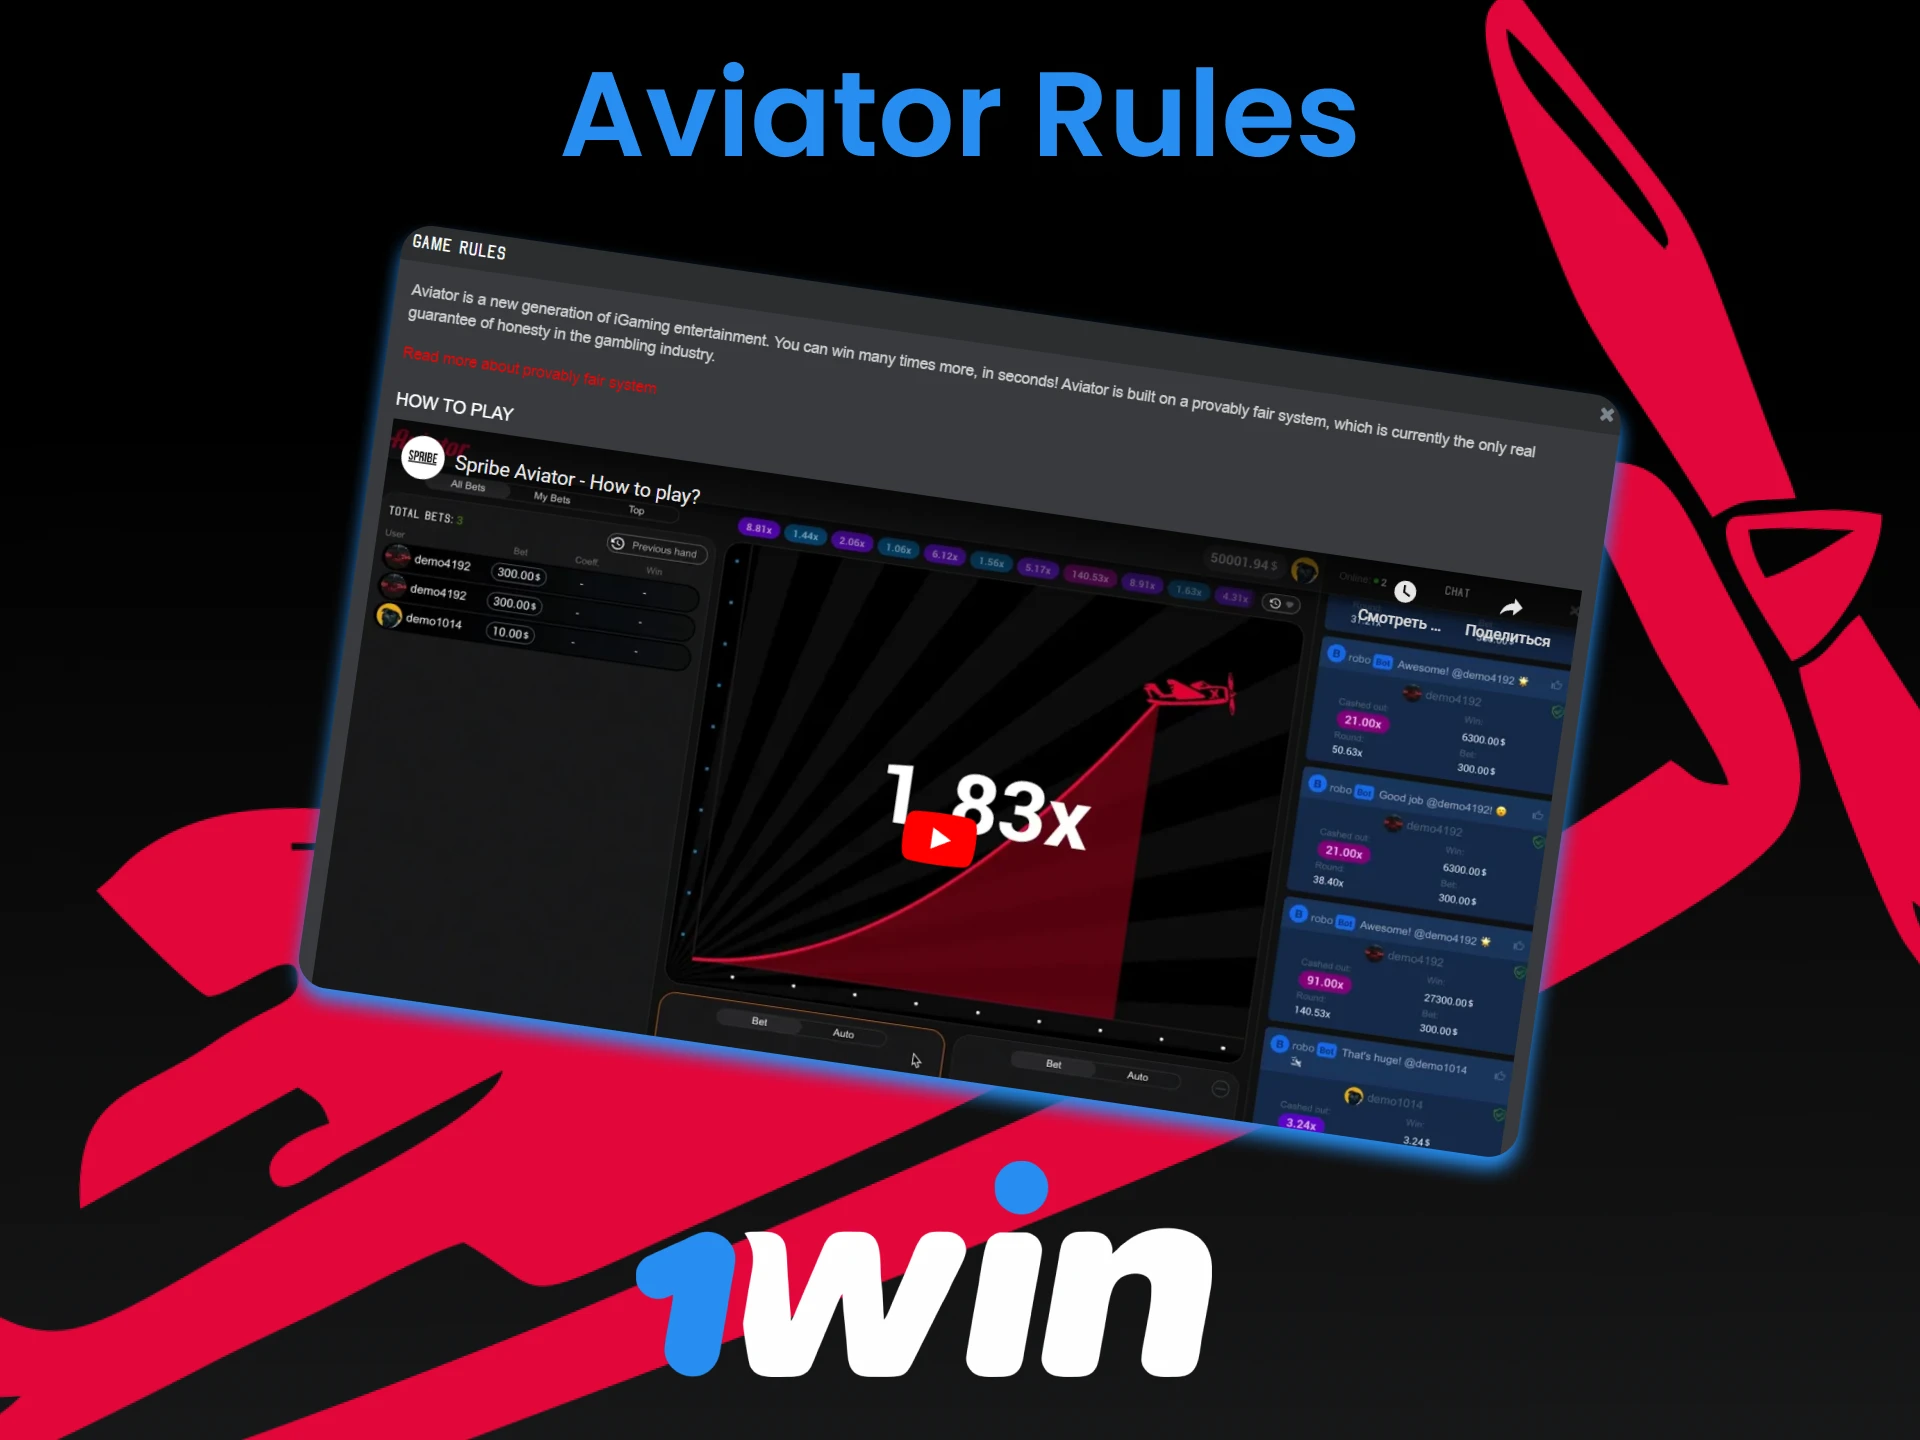 Siga as regras do jogo Aviator da 1win.